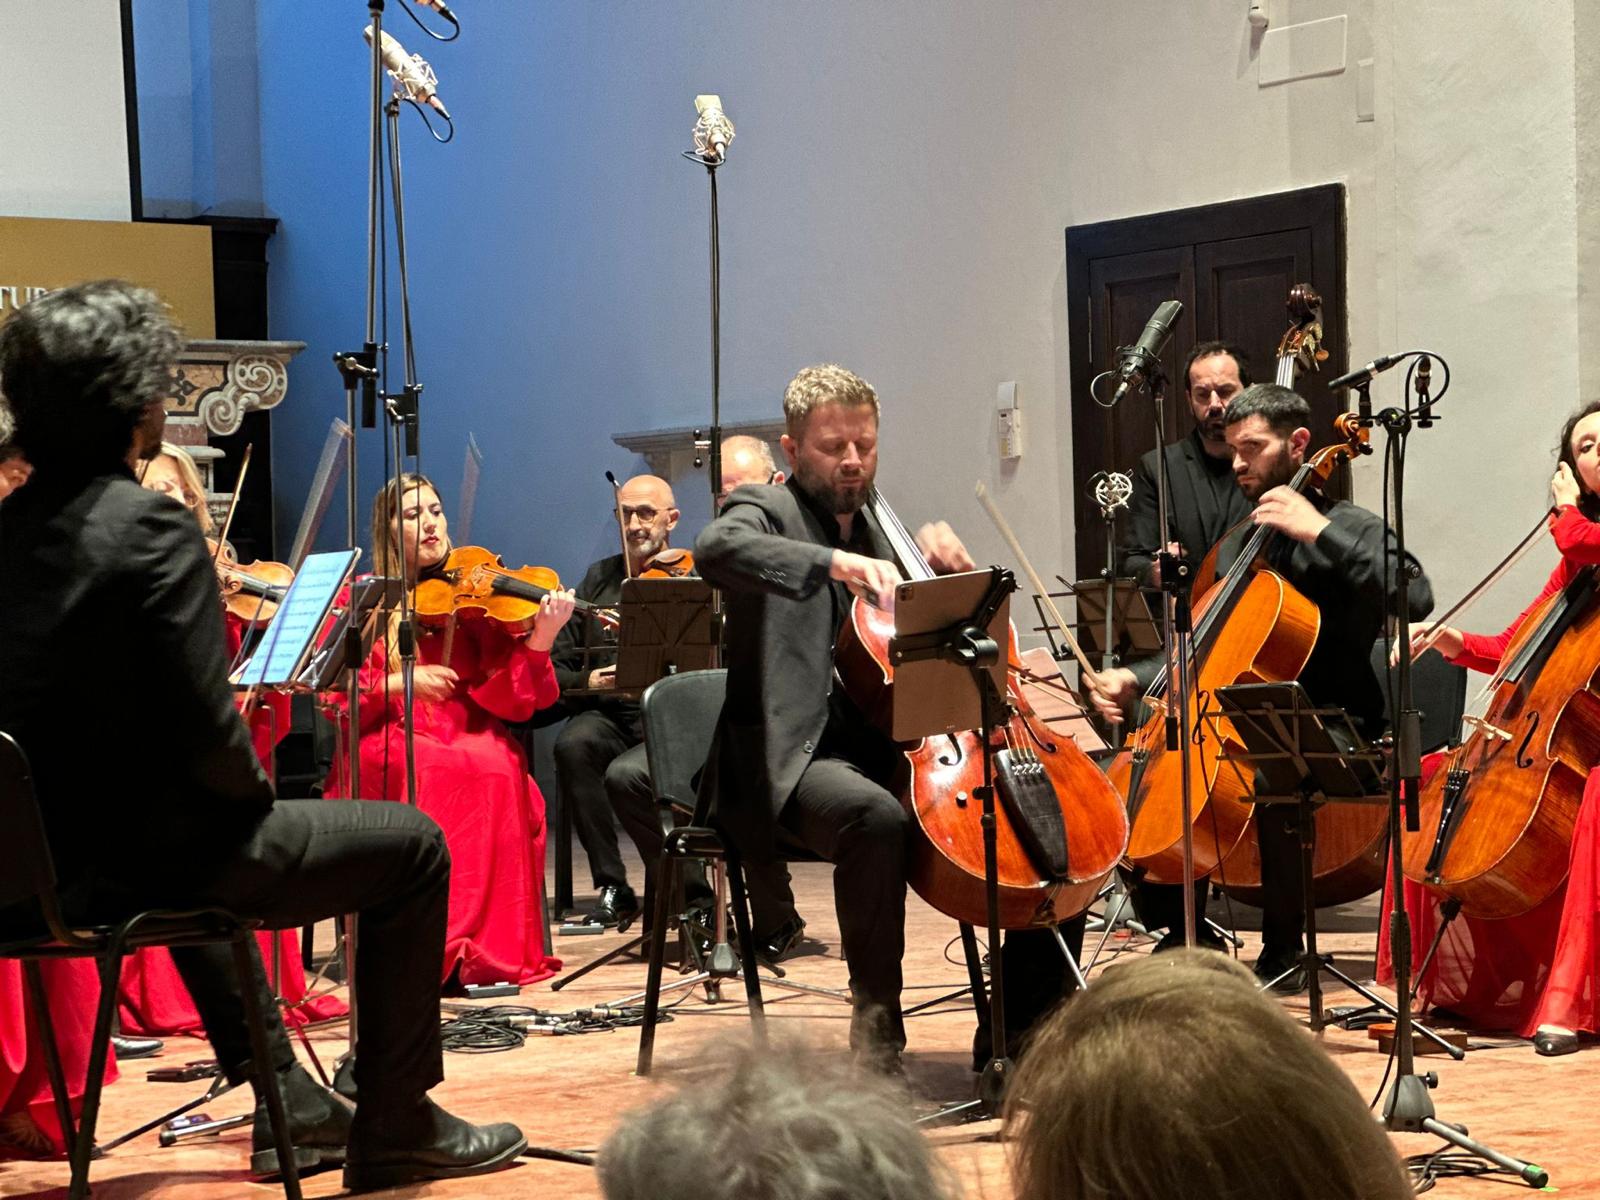 Orchestra Accademia di Santa Sofia, successo per il concerto con il solista Danilo Squitieri